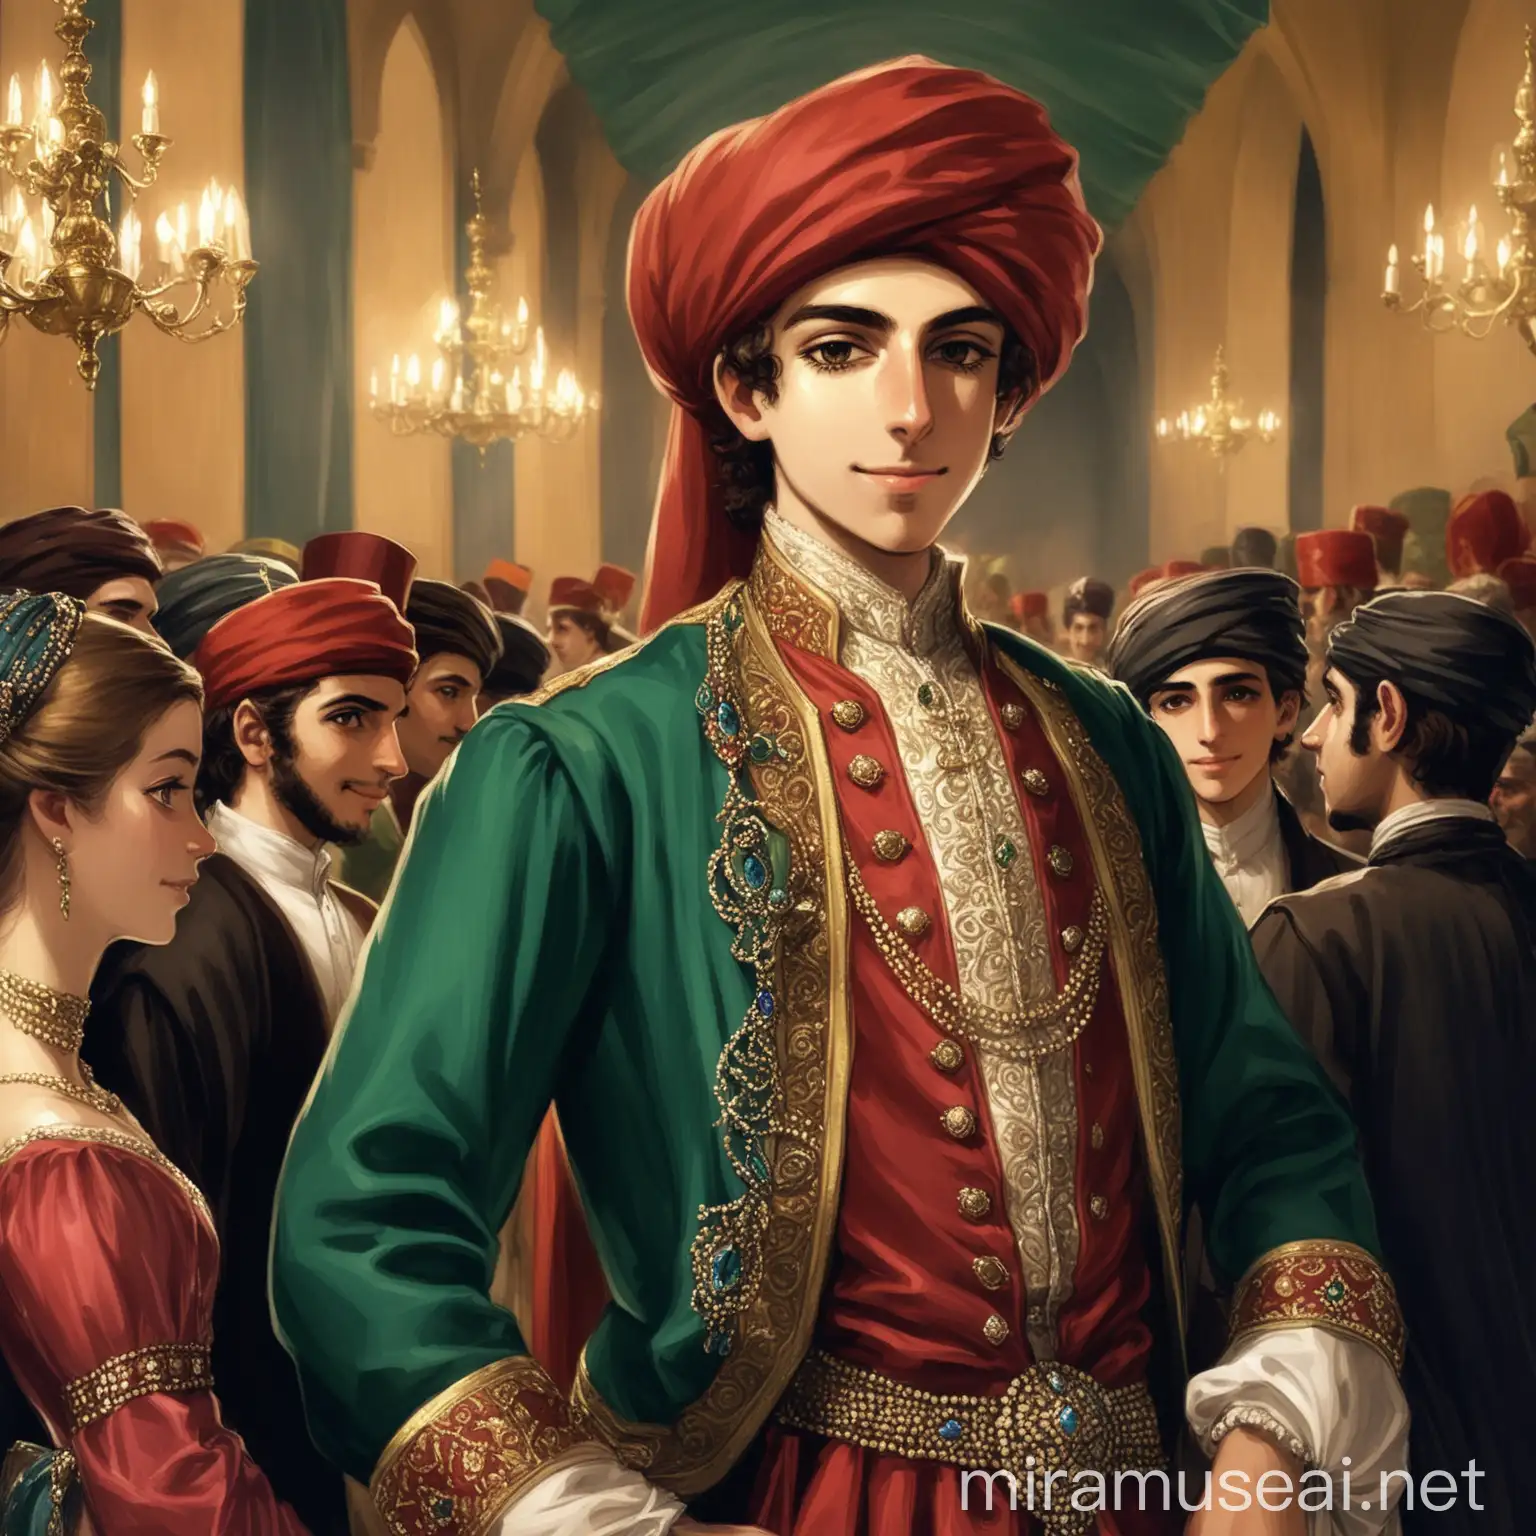 joven comerciante otomano rico, en un baile ingles
